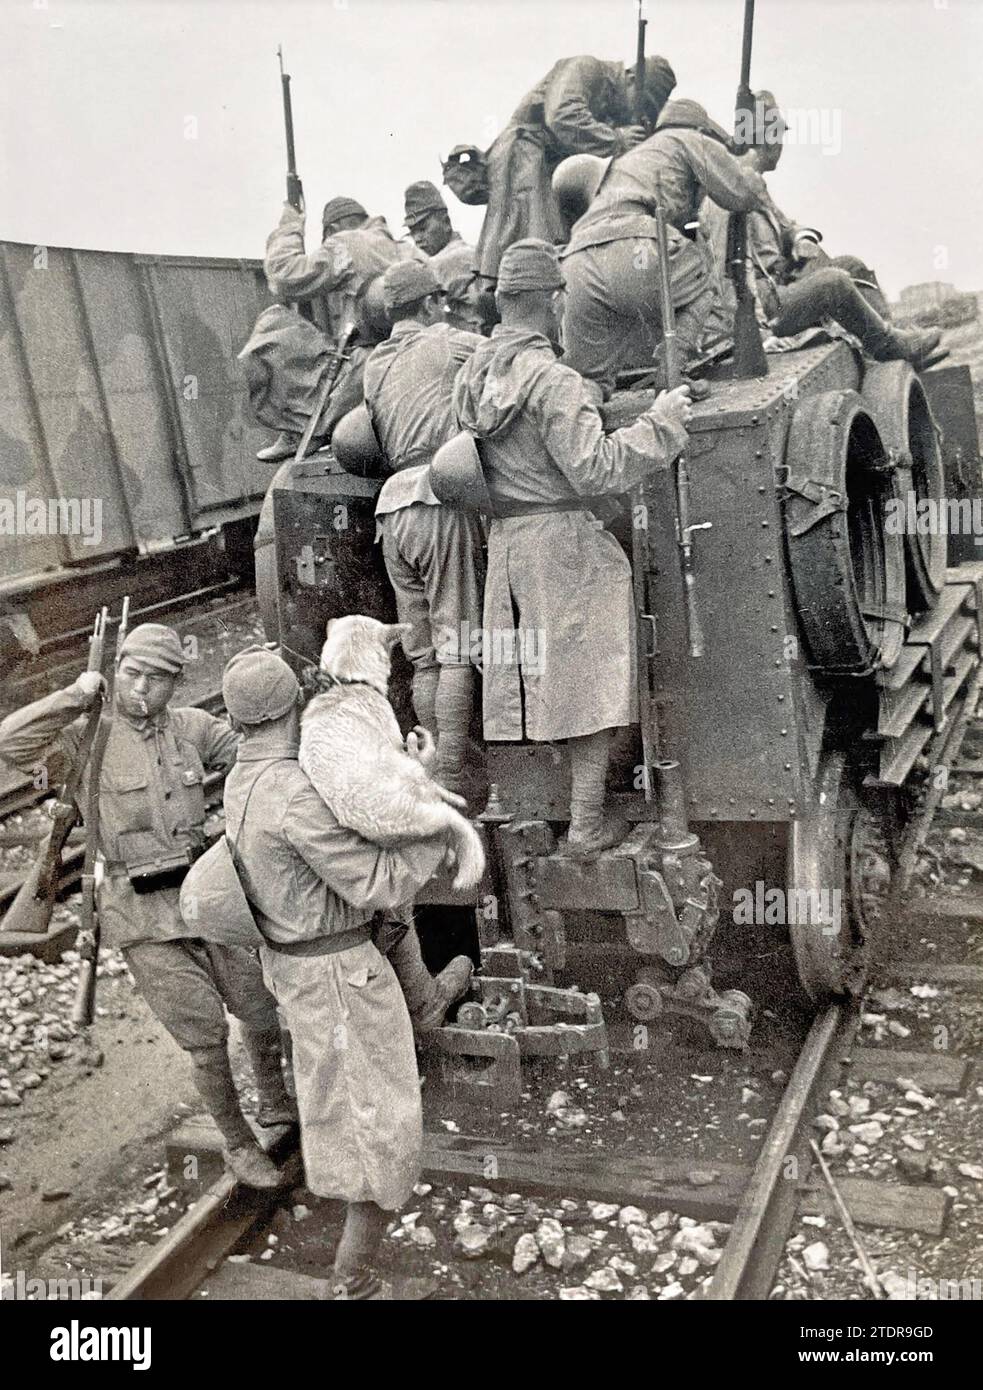 CHINESISCH-JAPANISCHER KRIEG 1937-1945. Eine Einheit des japanischen Eisenbahnkorps bereitet sich auf eine Patrouille vor, zusammen mit dem Maskottchen der Einheit. Stockfoto